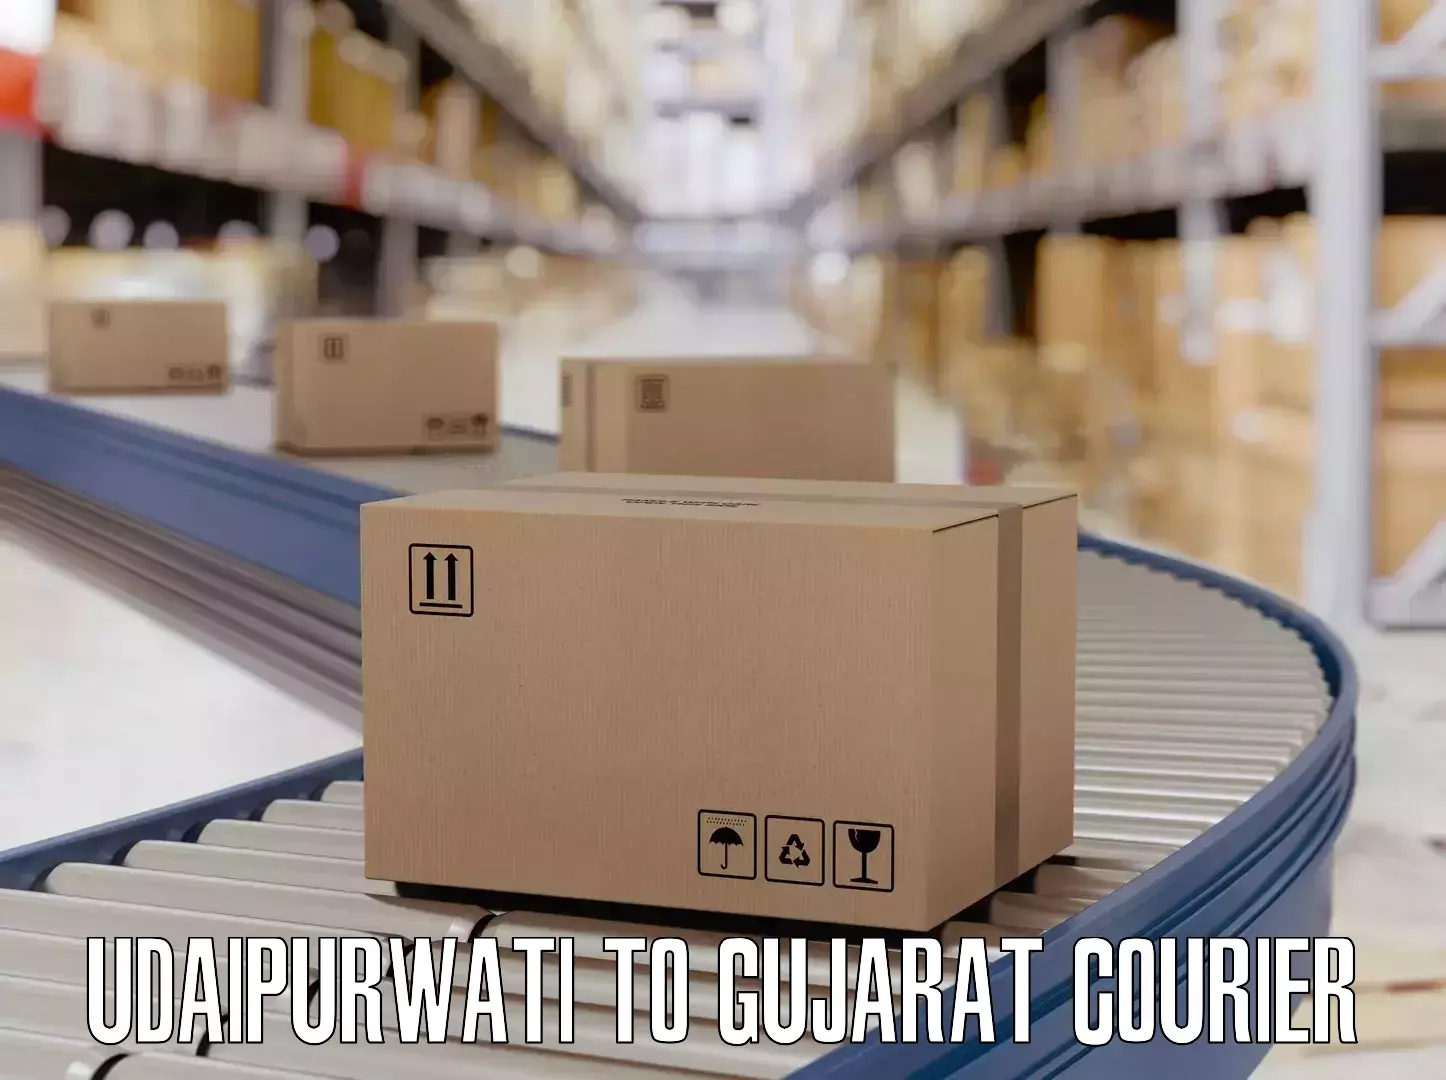 Door-to-door baggage service Udaipurwati to Gujarat